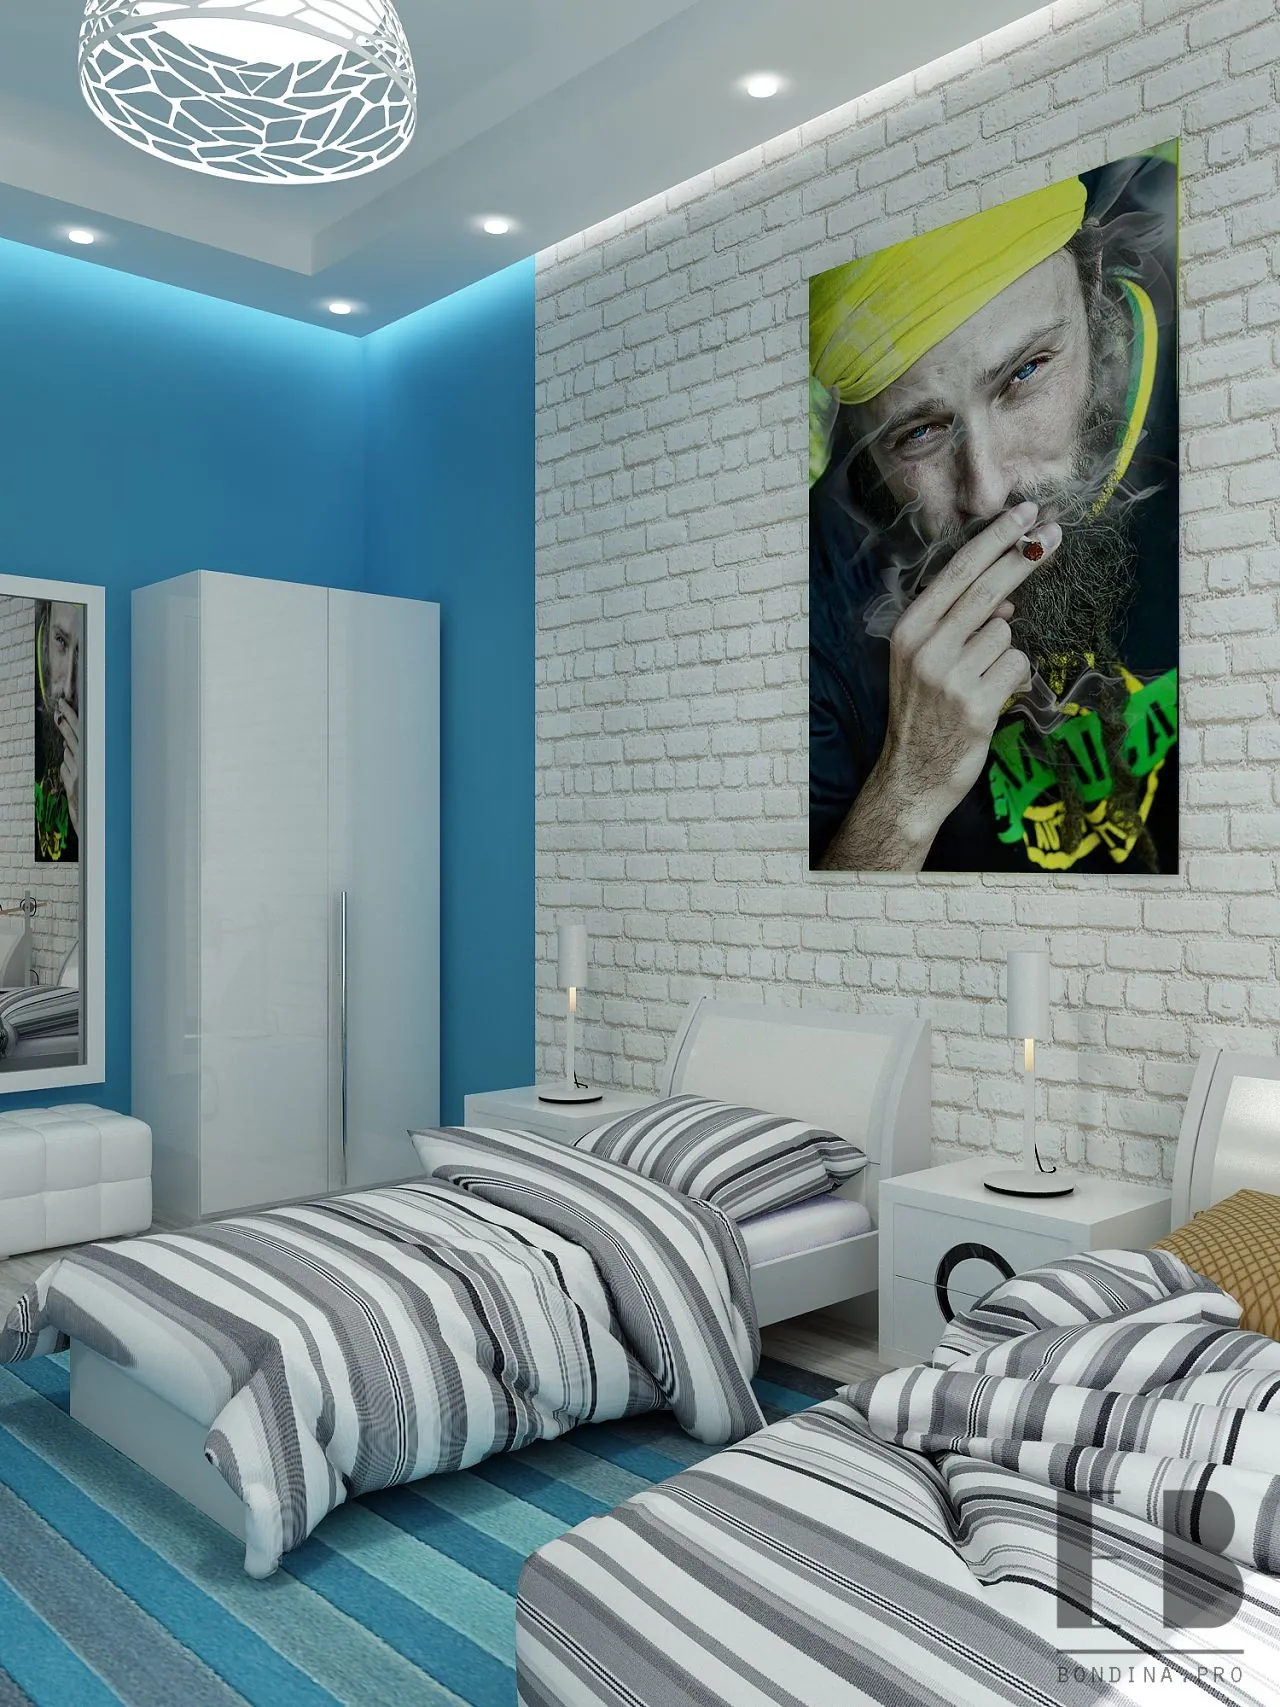 Bedroom for 2 teenagers design